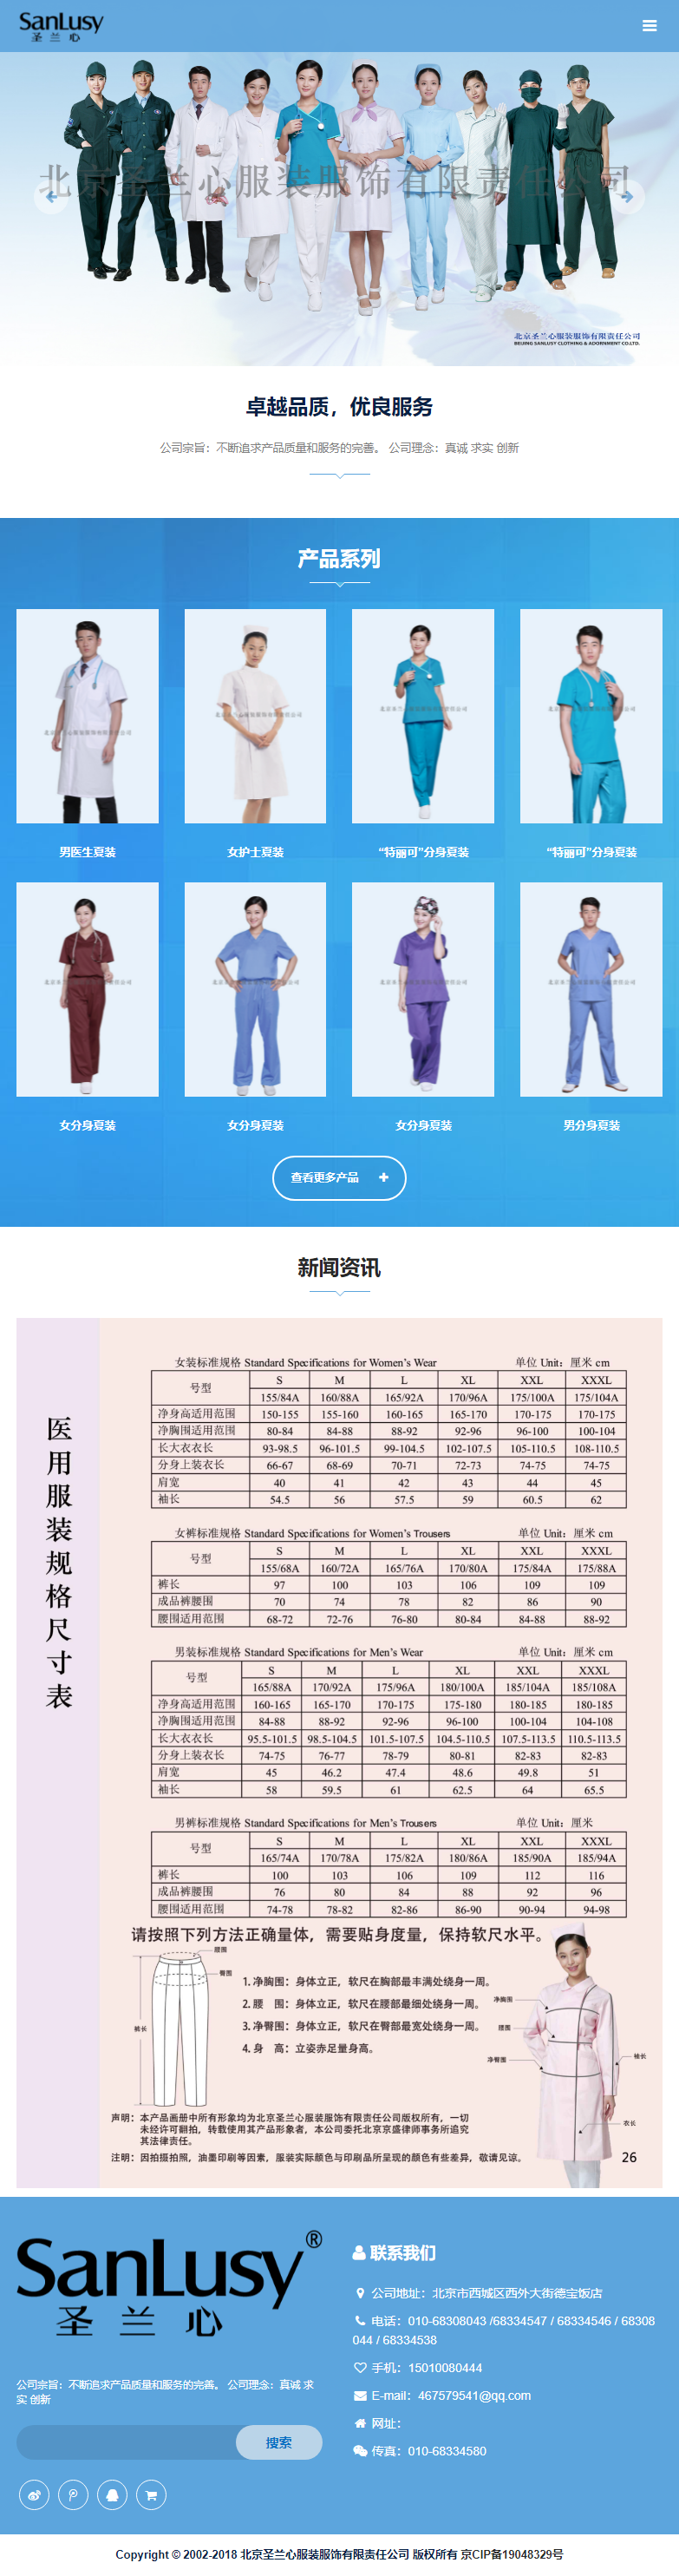 北京圣兰心服装服饰有限责任公司网站案例